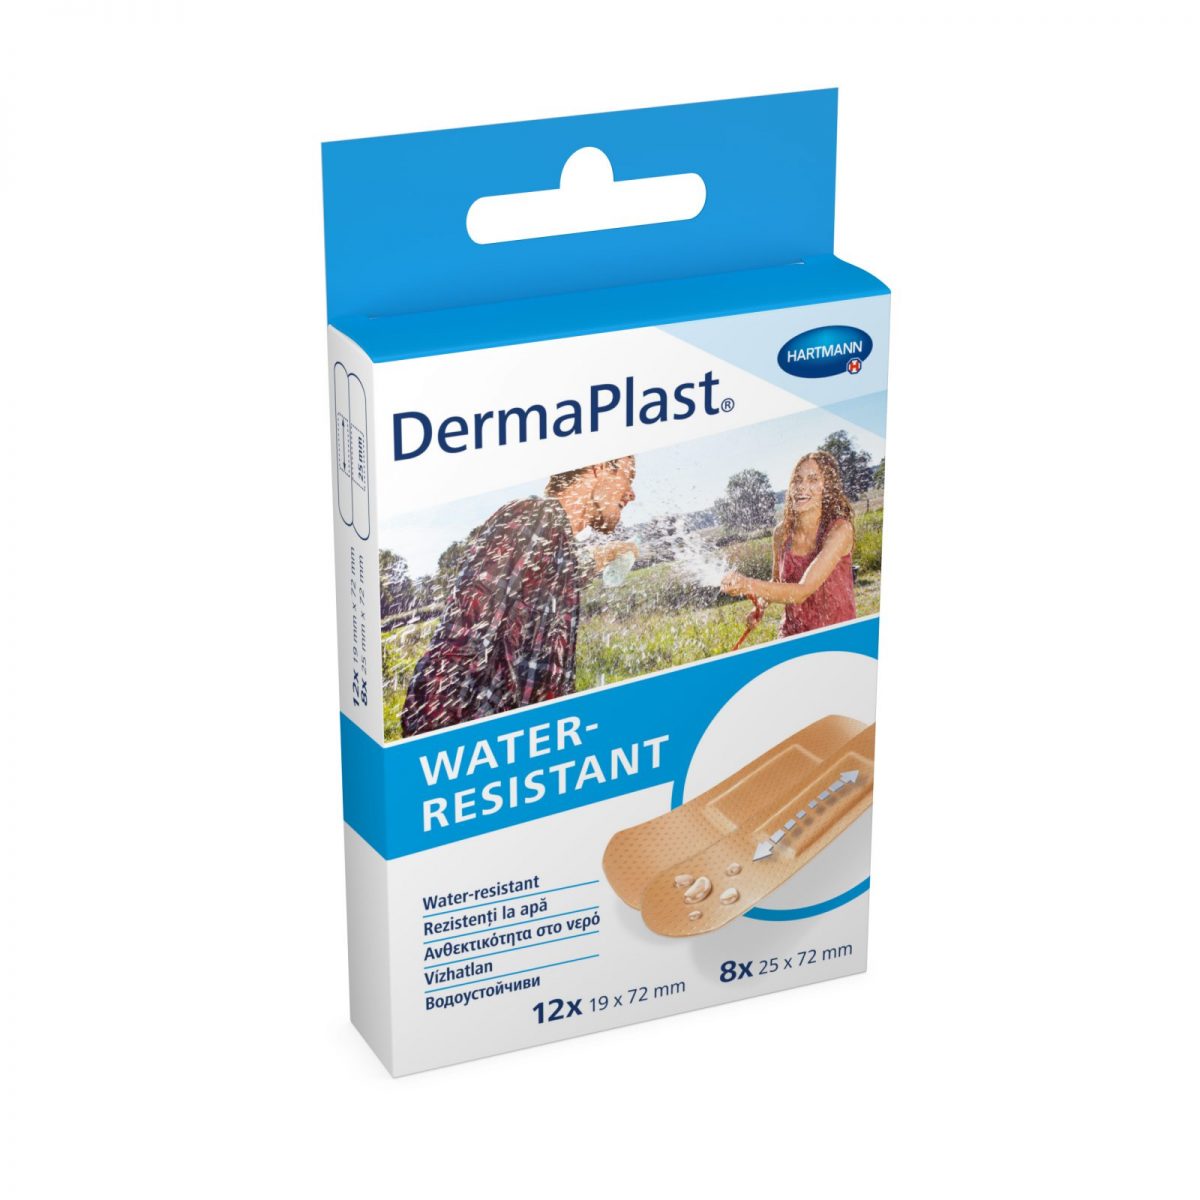 DermaPlast water-resistant